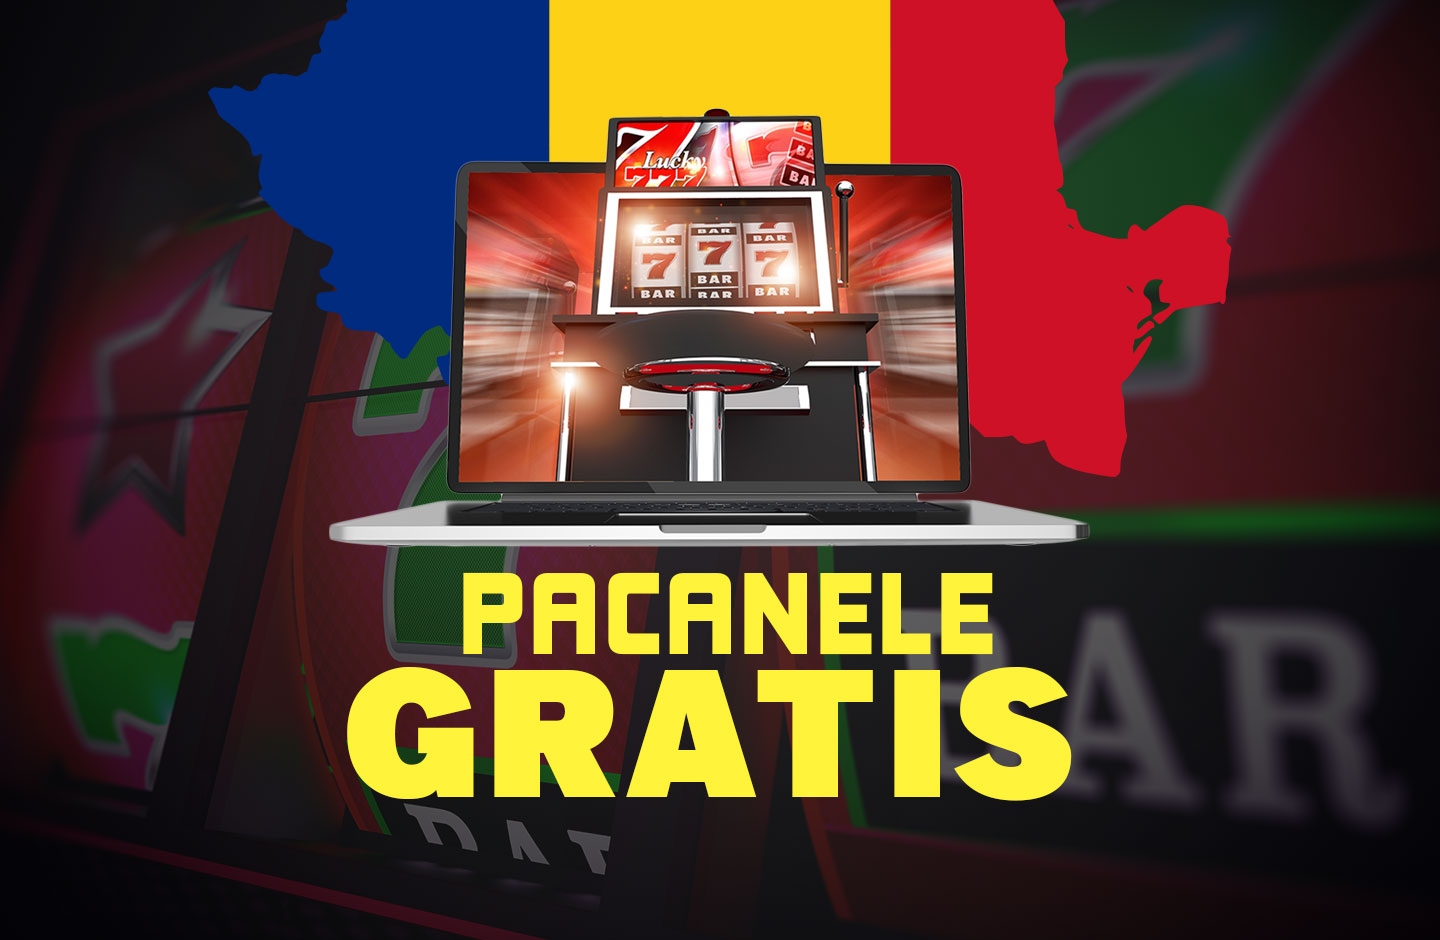 Jocuri pacanele gratis online din Romania - TOP 5 platforme romanesti cu  aparate